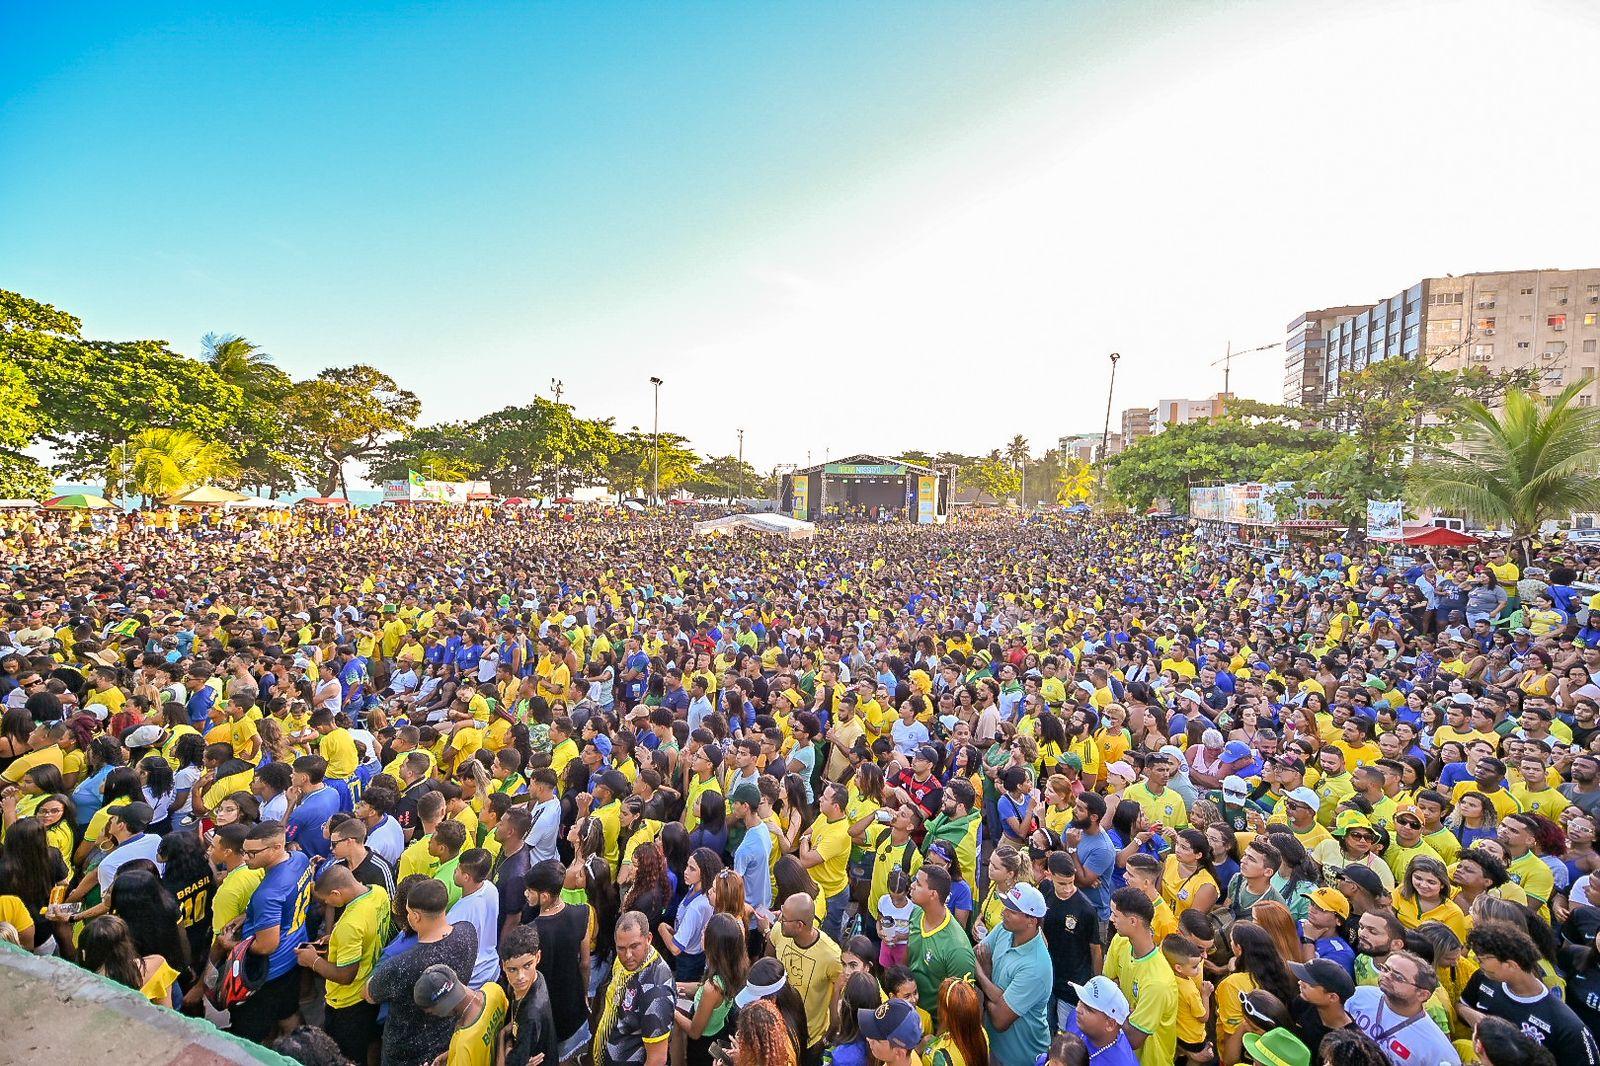 Prefeitura de Maceió  Jogo do Brasil altera funcionamento de…